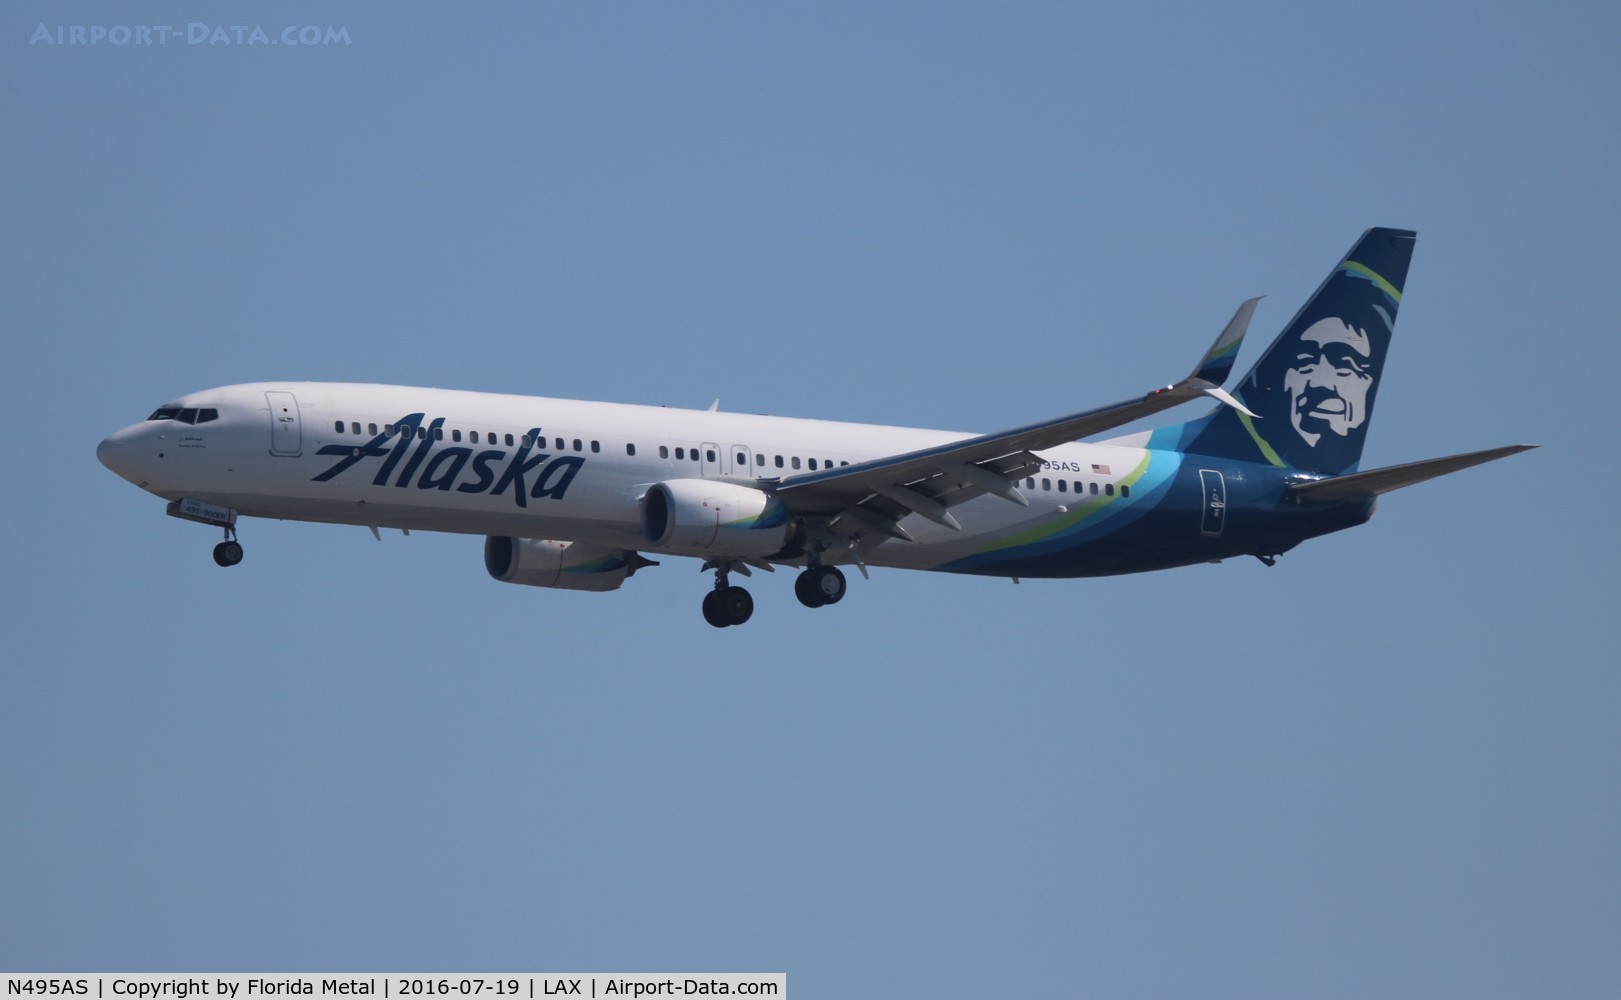 N495AS, 2016 Boeing 737-900/ER C/N 41728, Alaska